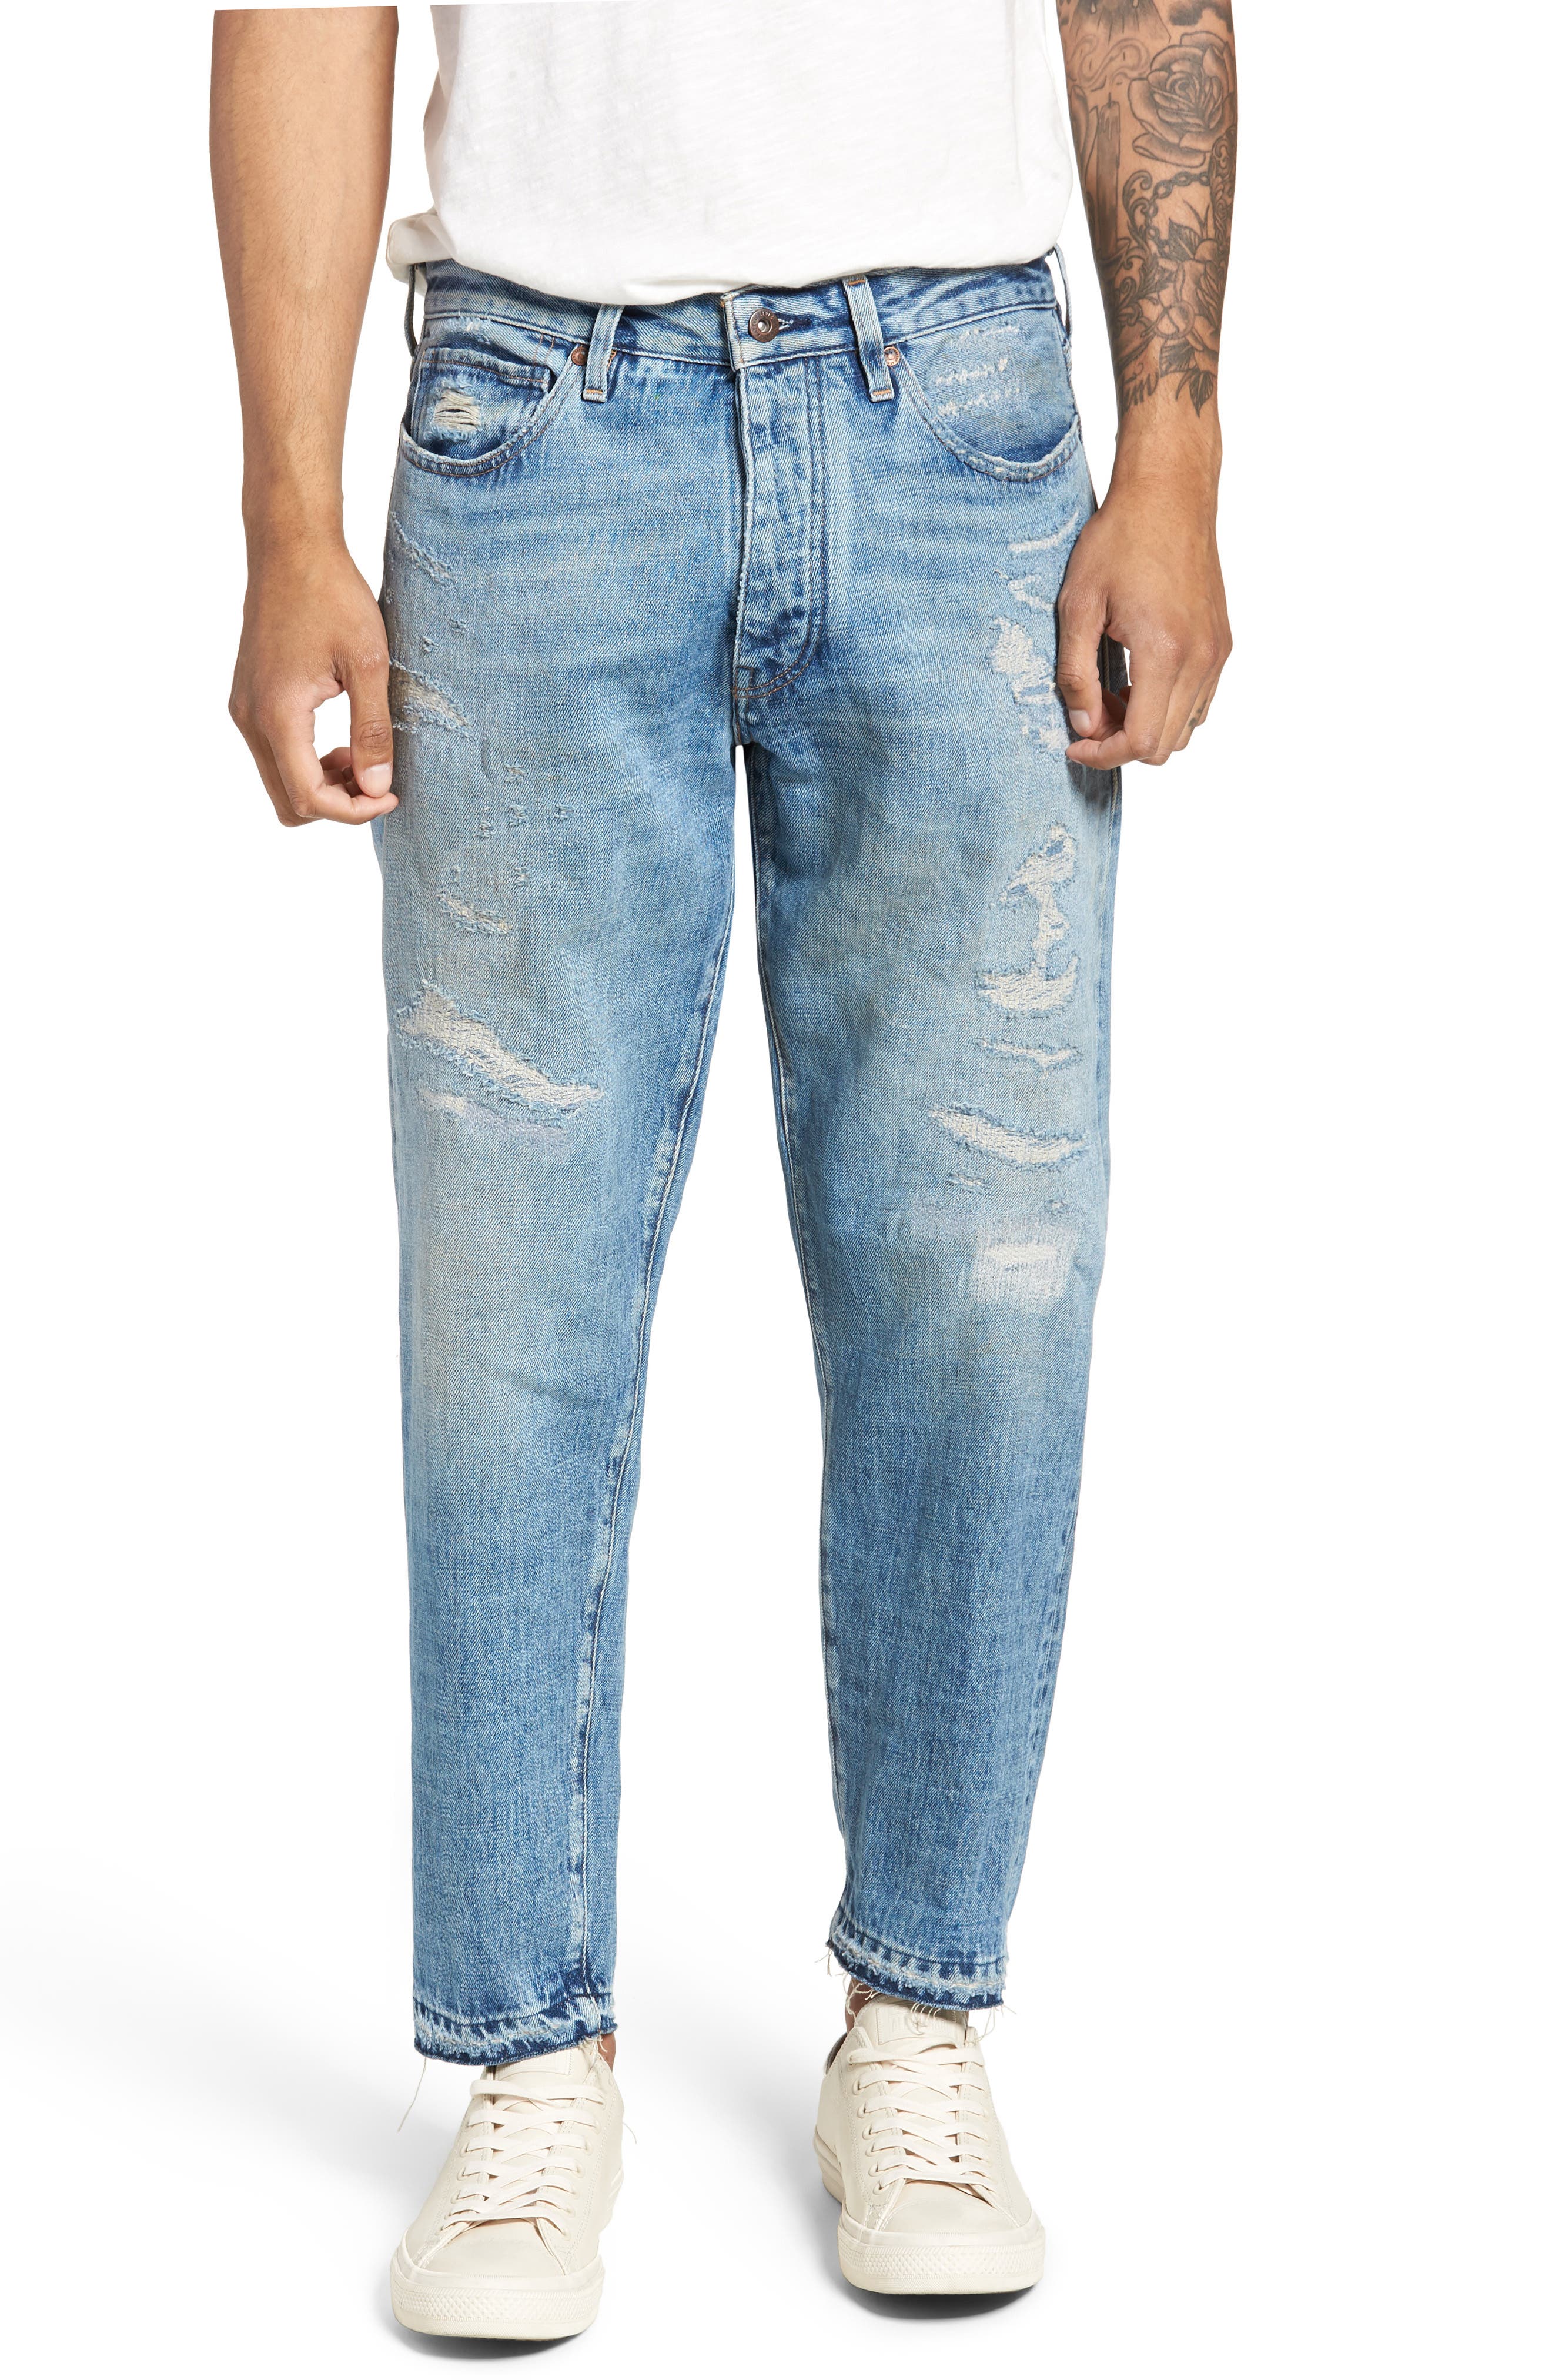 Draft Taper Standard Fit Jeans 